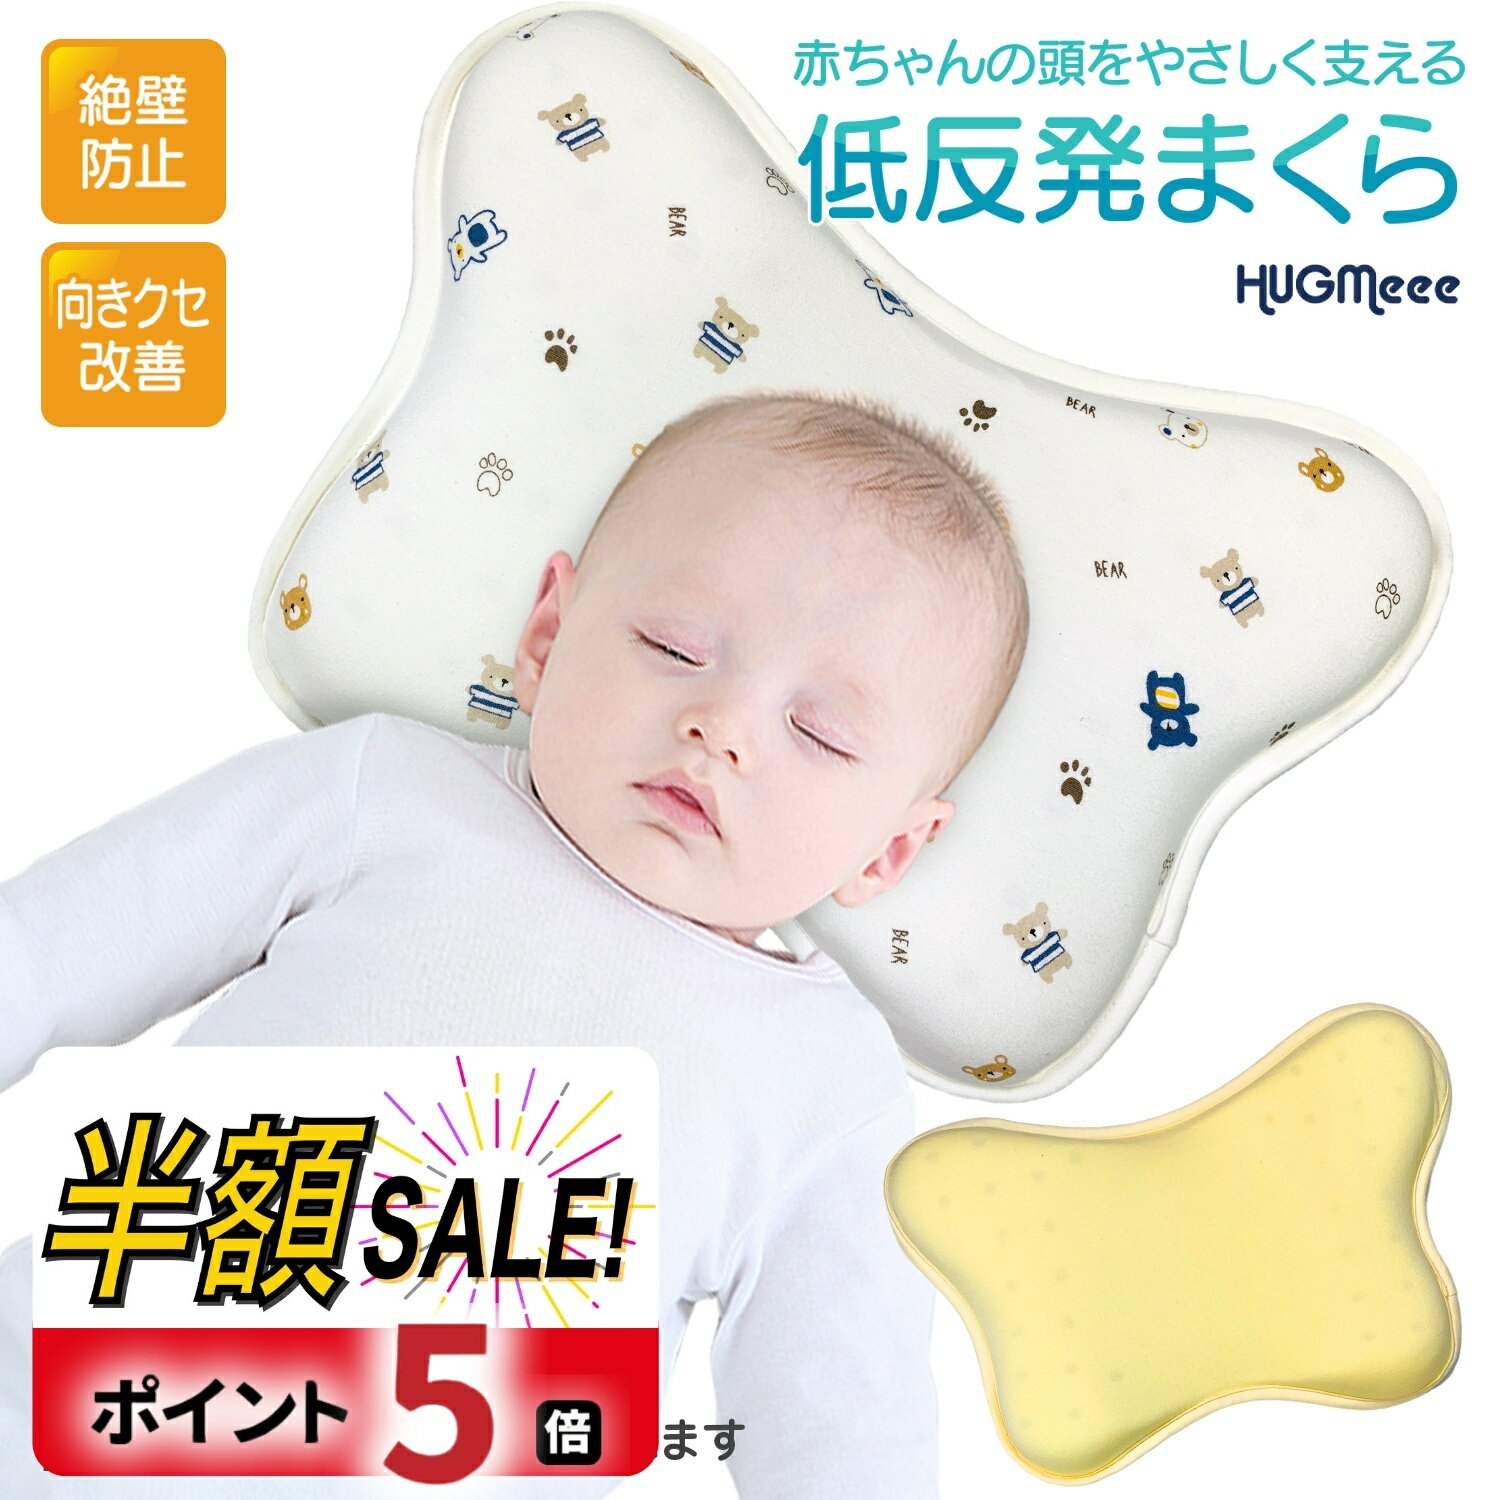 【300円クーポンOFF+P5倍】ベビー枕 絶壁防止 新生児